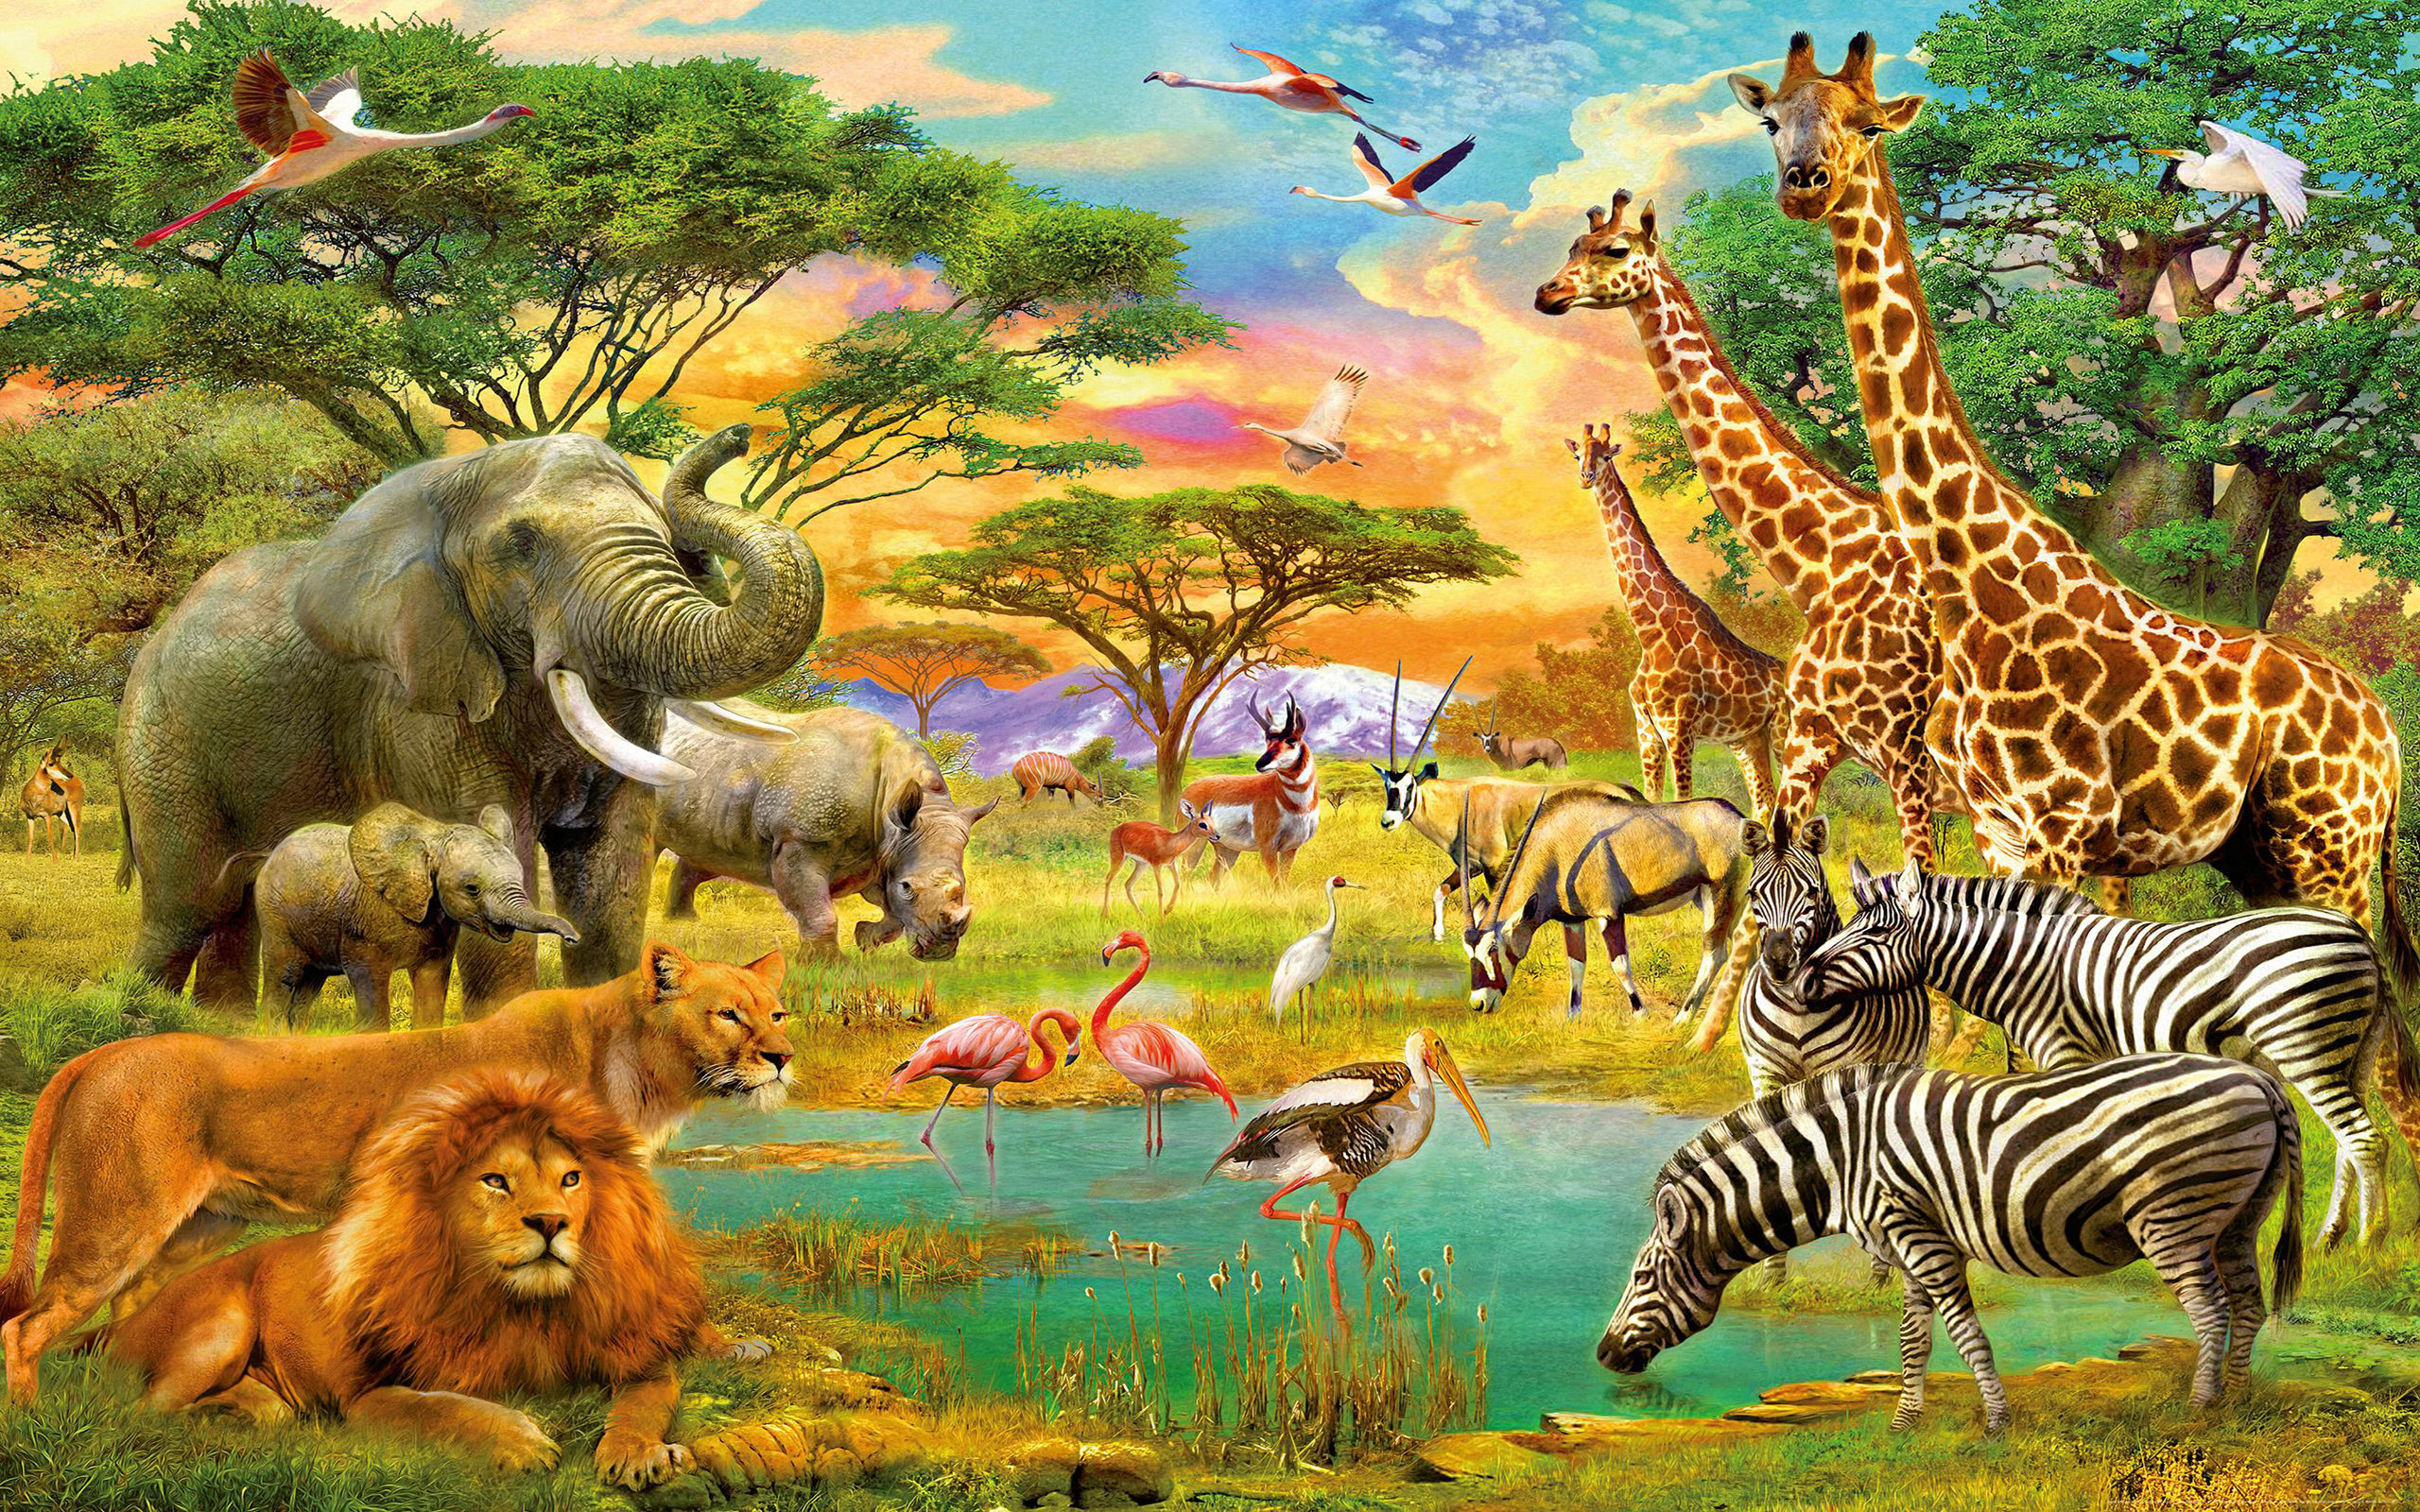 2560x1600 African Animals Jungle Lion Zebra Giraffe Elephants Flamingo Art Wallpaper  Hd 1920Ã1200